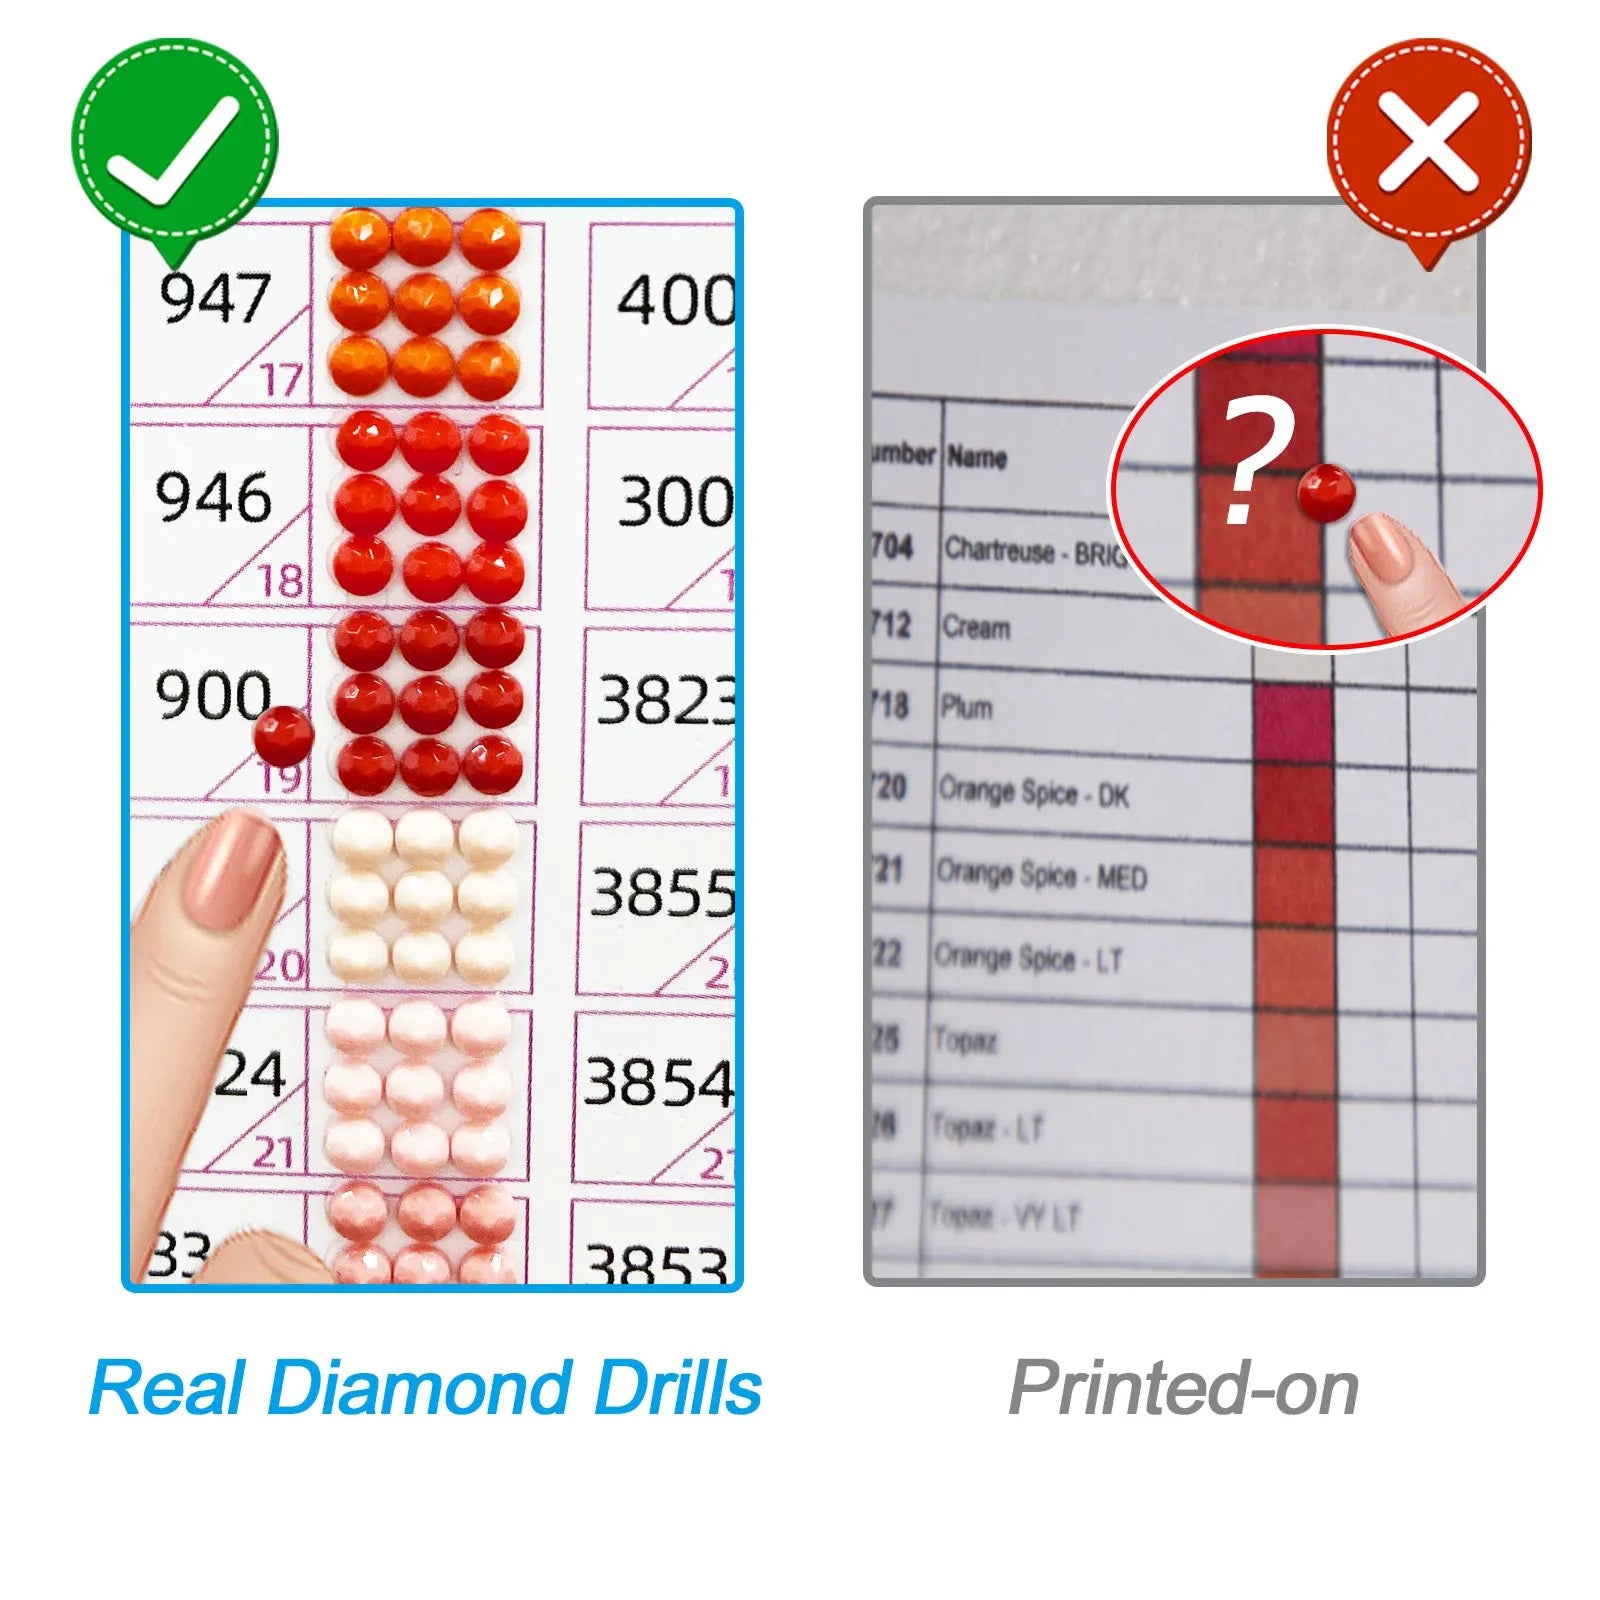 Diamond Painting DMC Color Printable Chart 